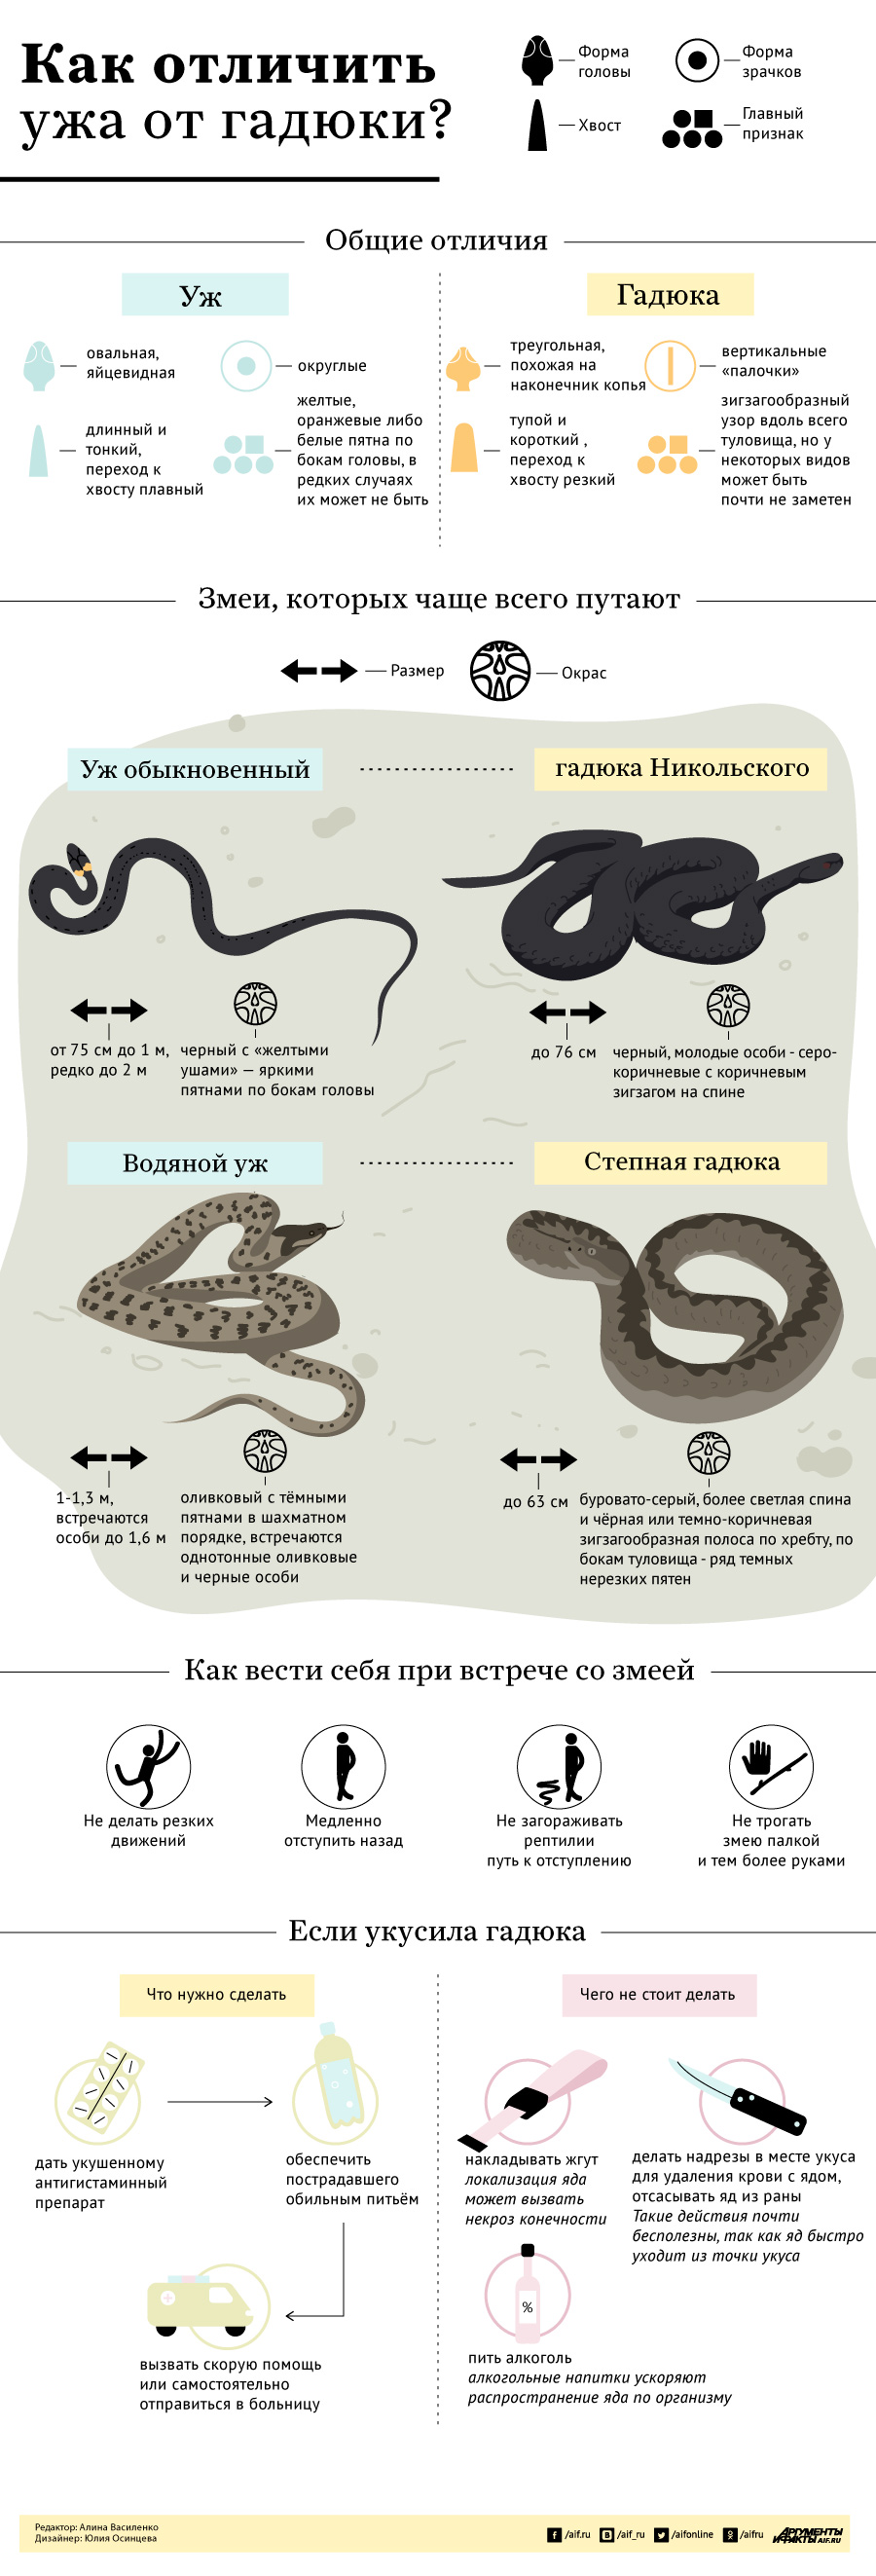 Инфографика змеи